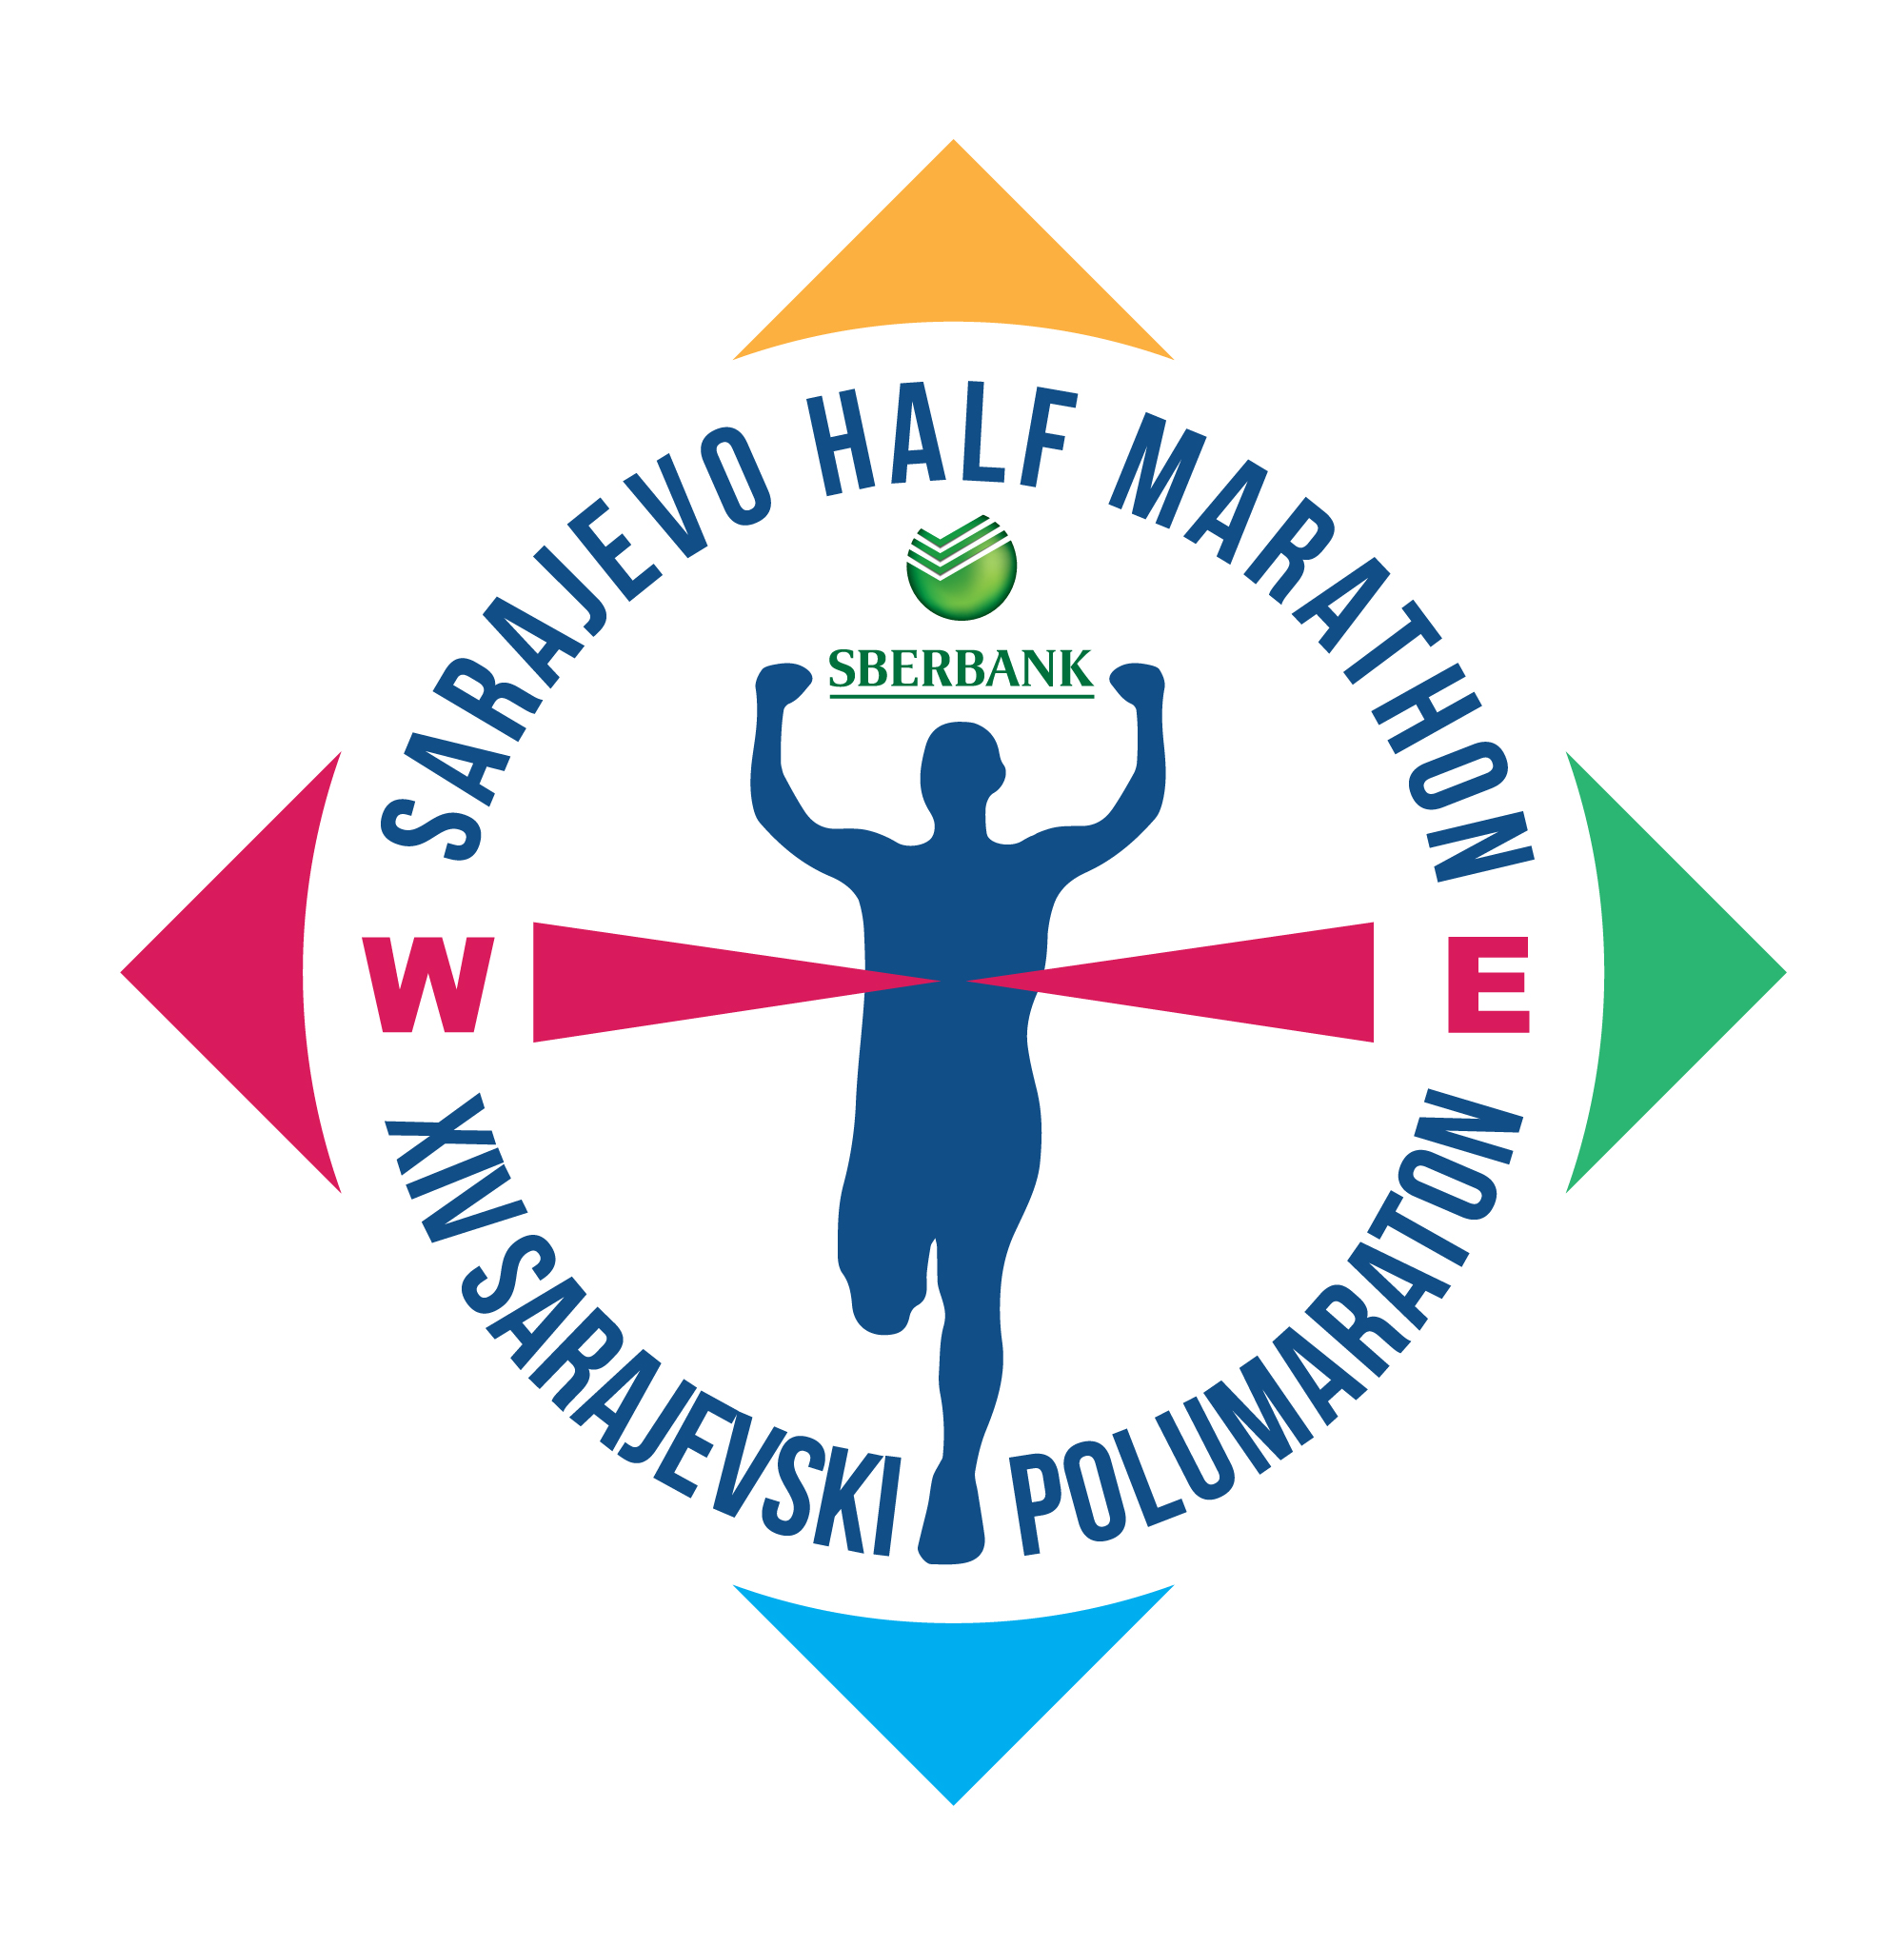 Novi logotip Sberbank Sarajevo Half Marathon-a